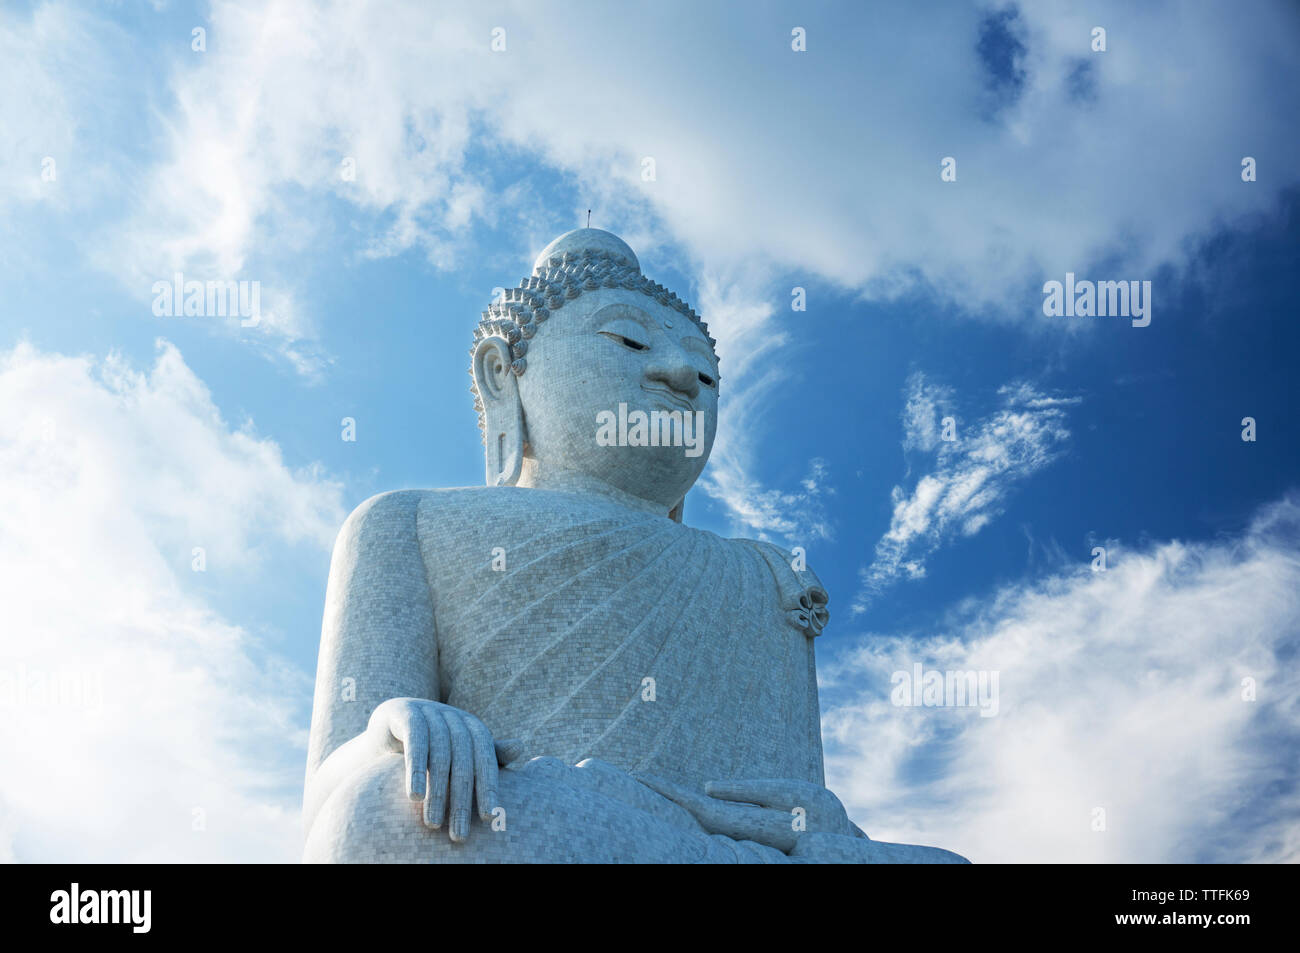 Basso angolo vista della statua del Buddha contro il cielo nuvoloso durante la giornata di sole Foto Stock